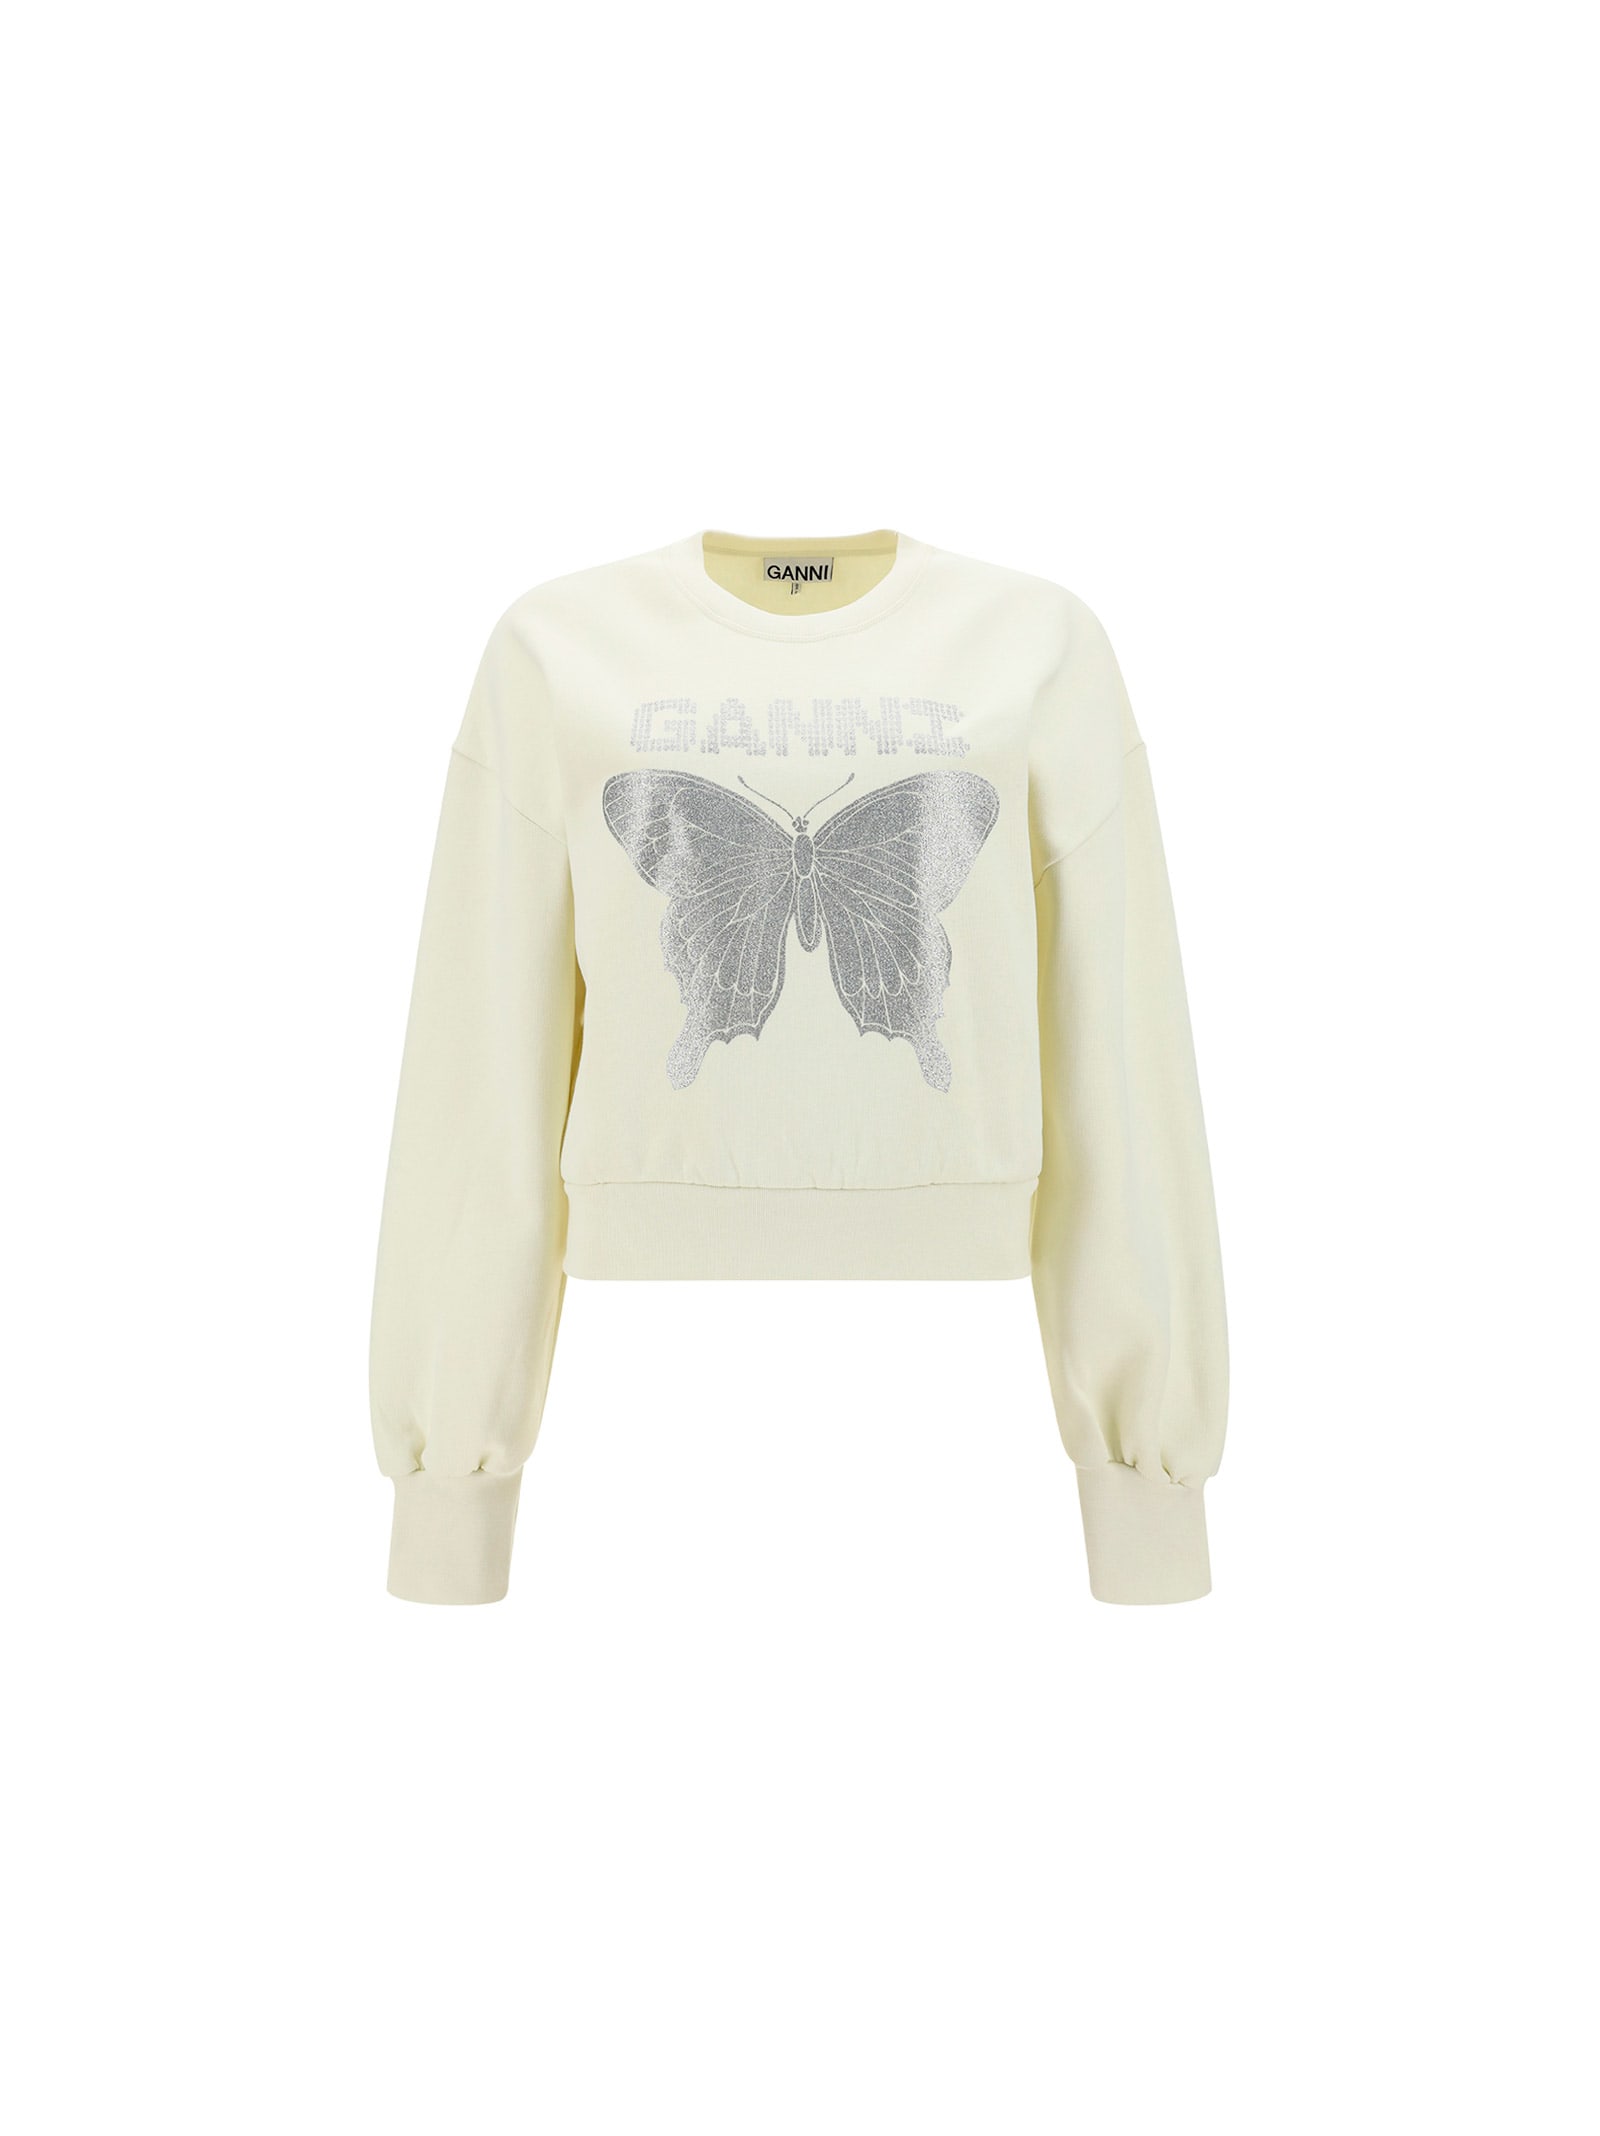 Ganni Butterfly Sweatshirt